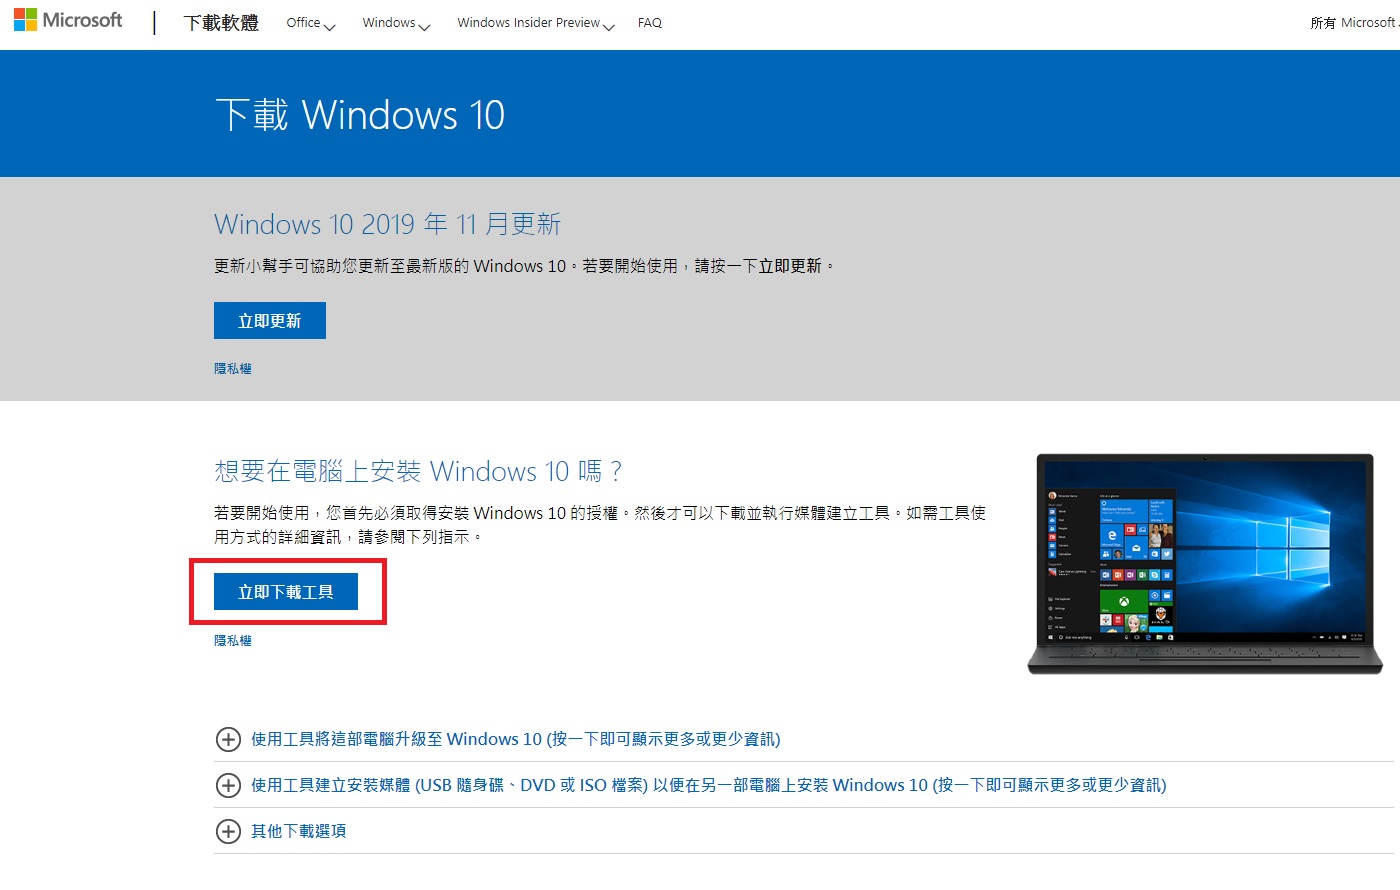 Win10下載繁體中文 官方網站釋出安裝檔案 安裝更方便